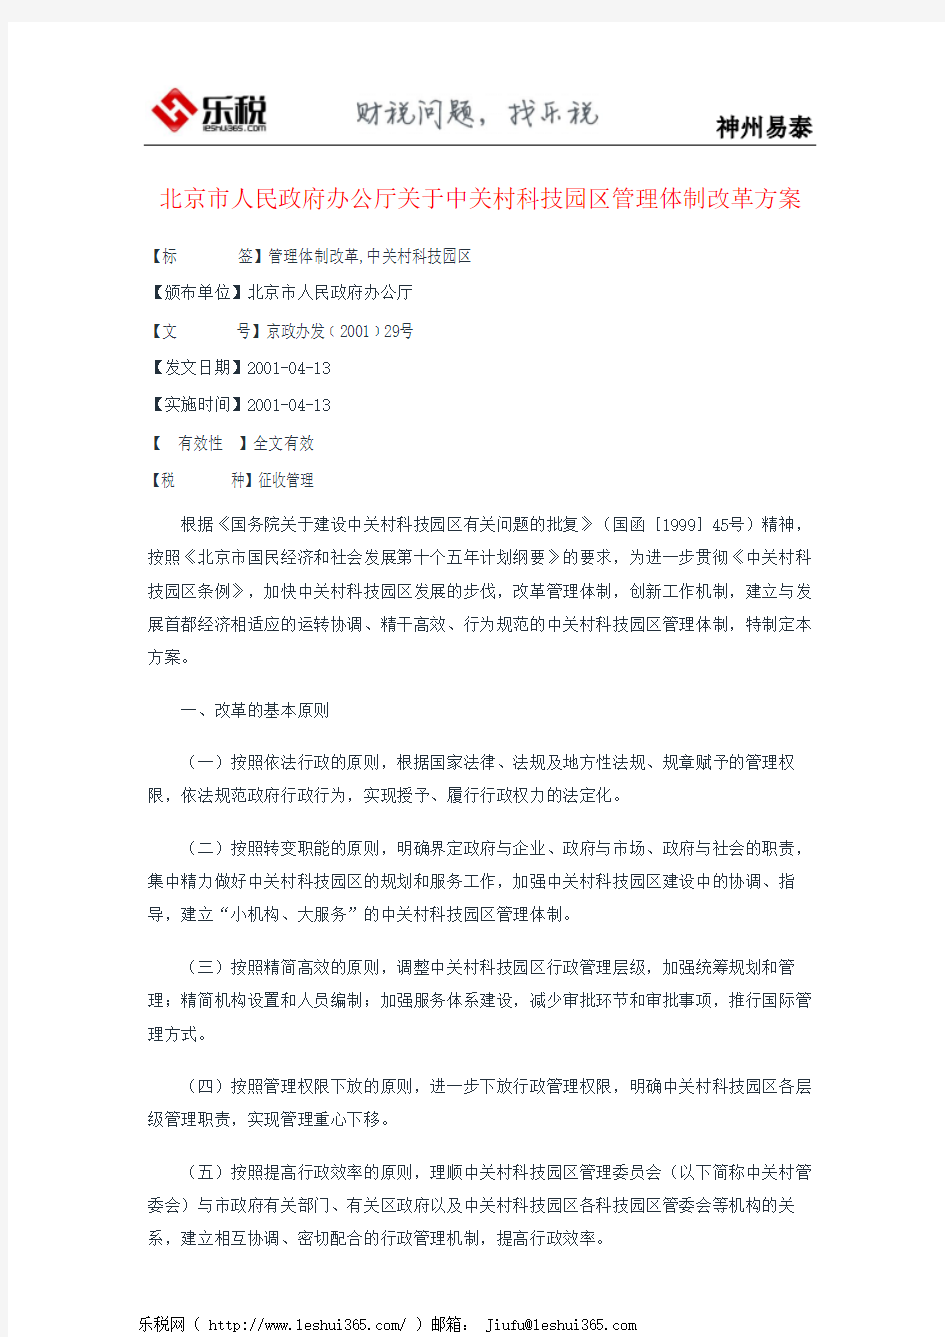 北京市人民政府办公厅关于中关村科技园区管理体制改革方案